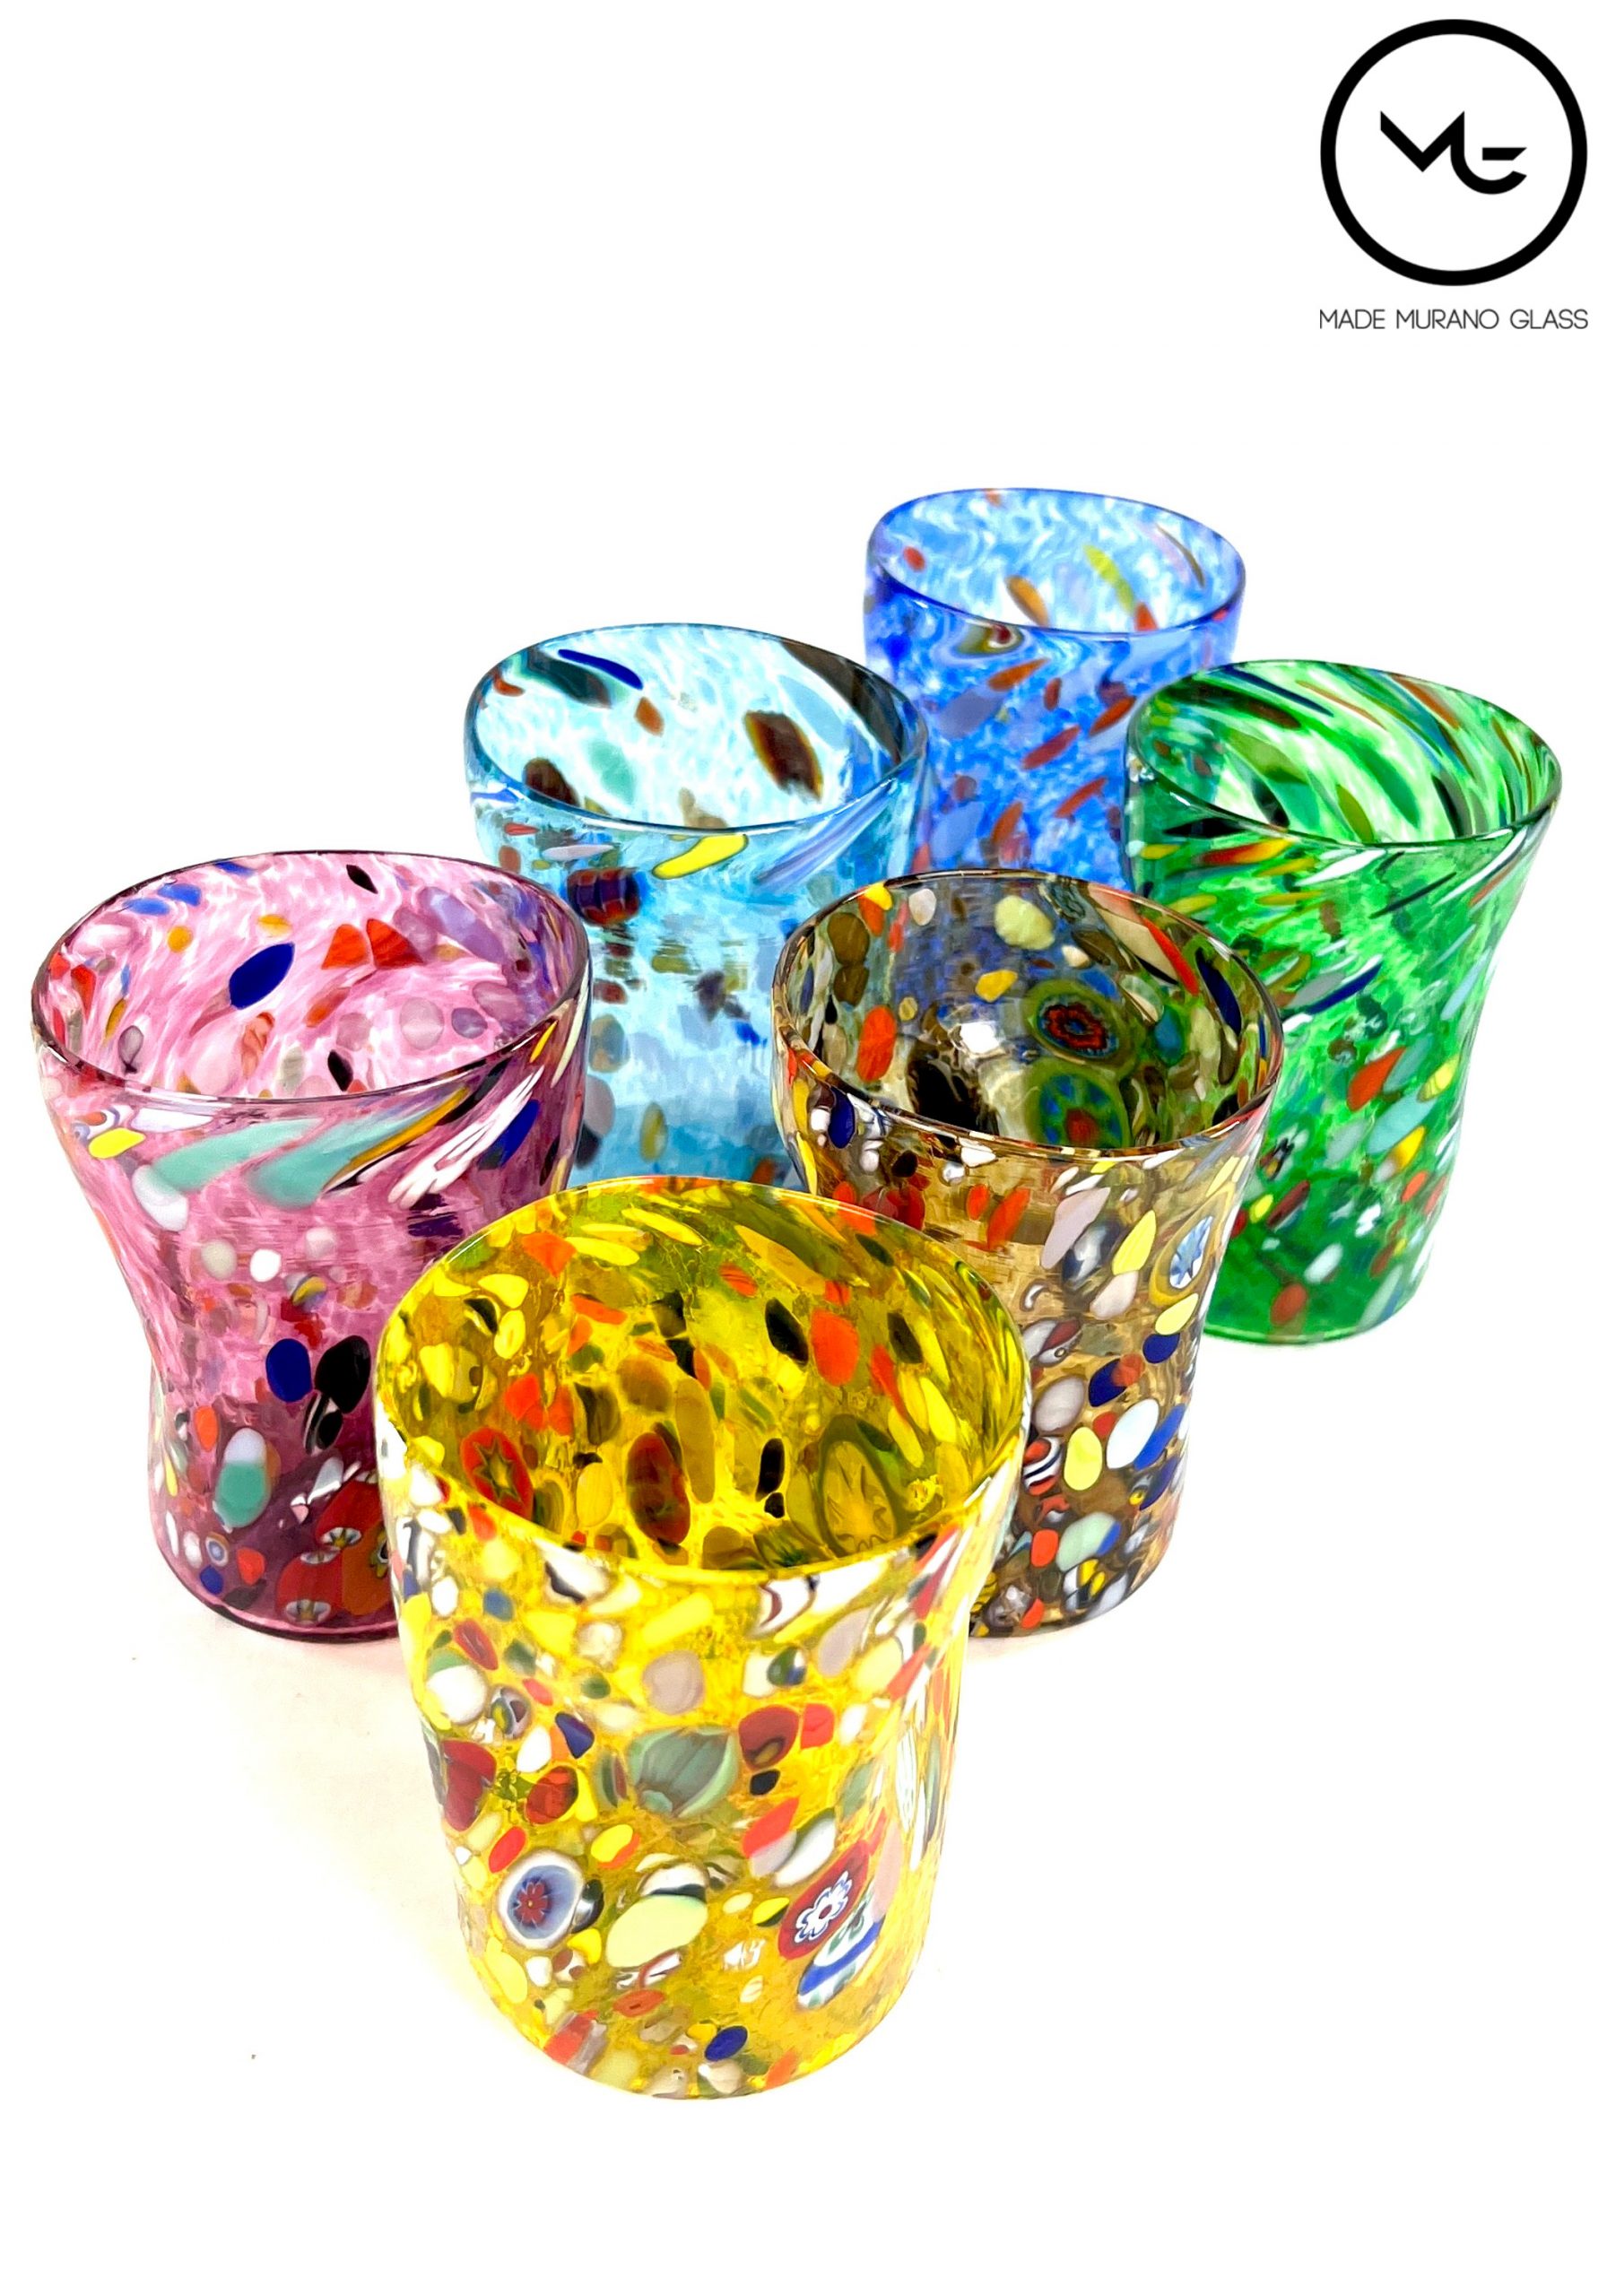 Murrine Murano Glass Alta Drinking Glasses, Set of 6